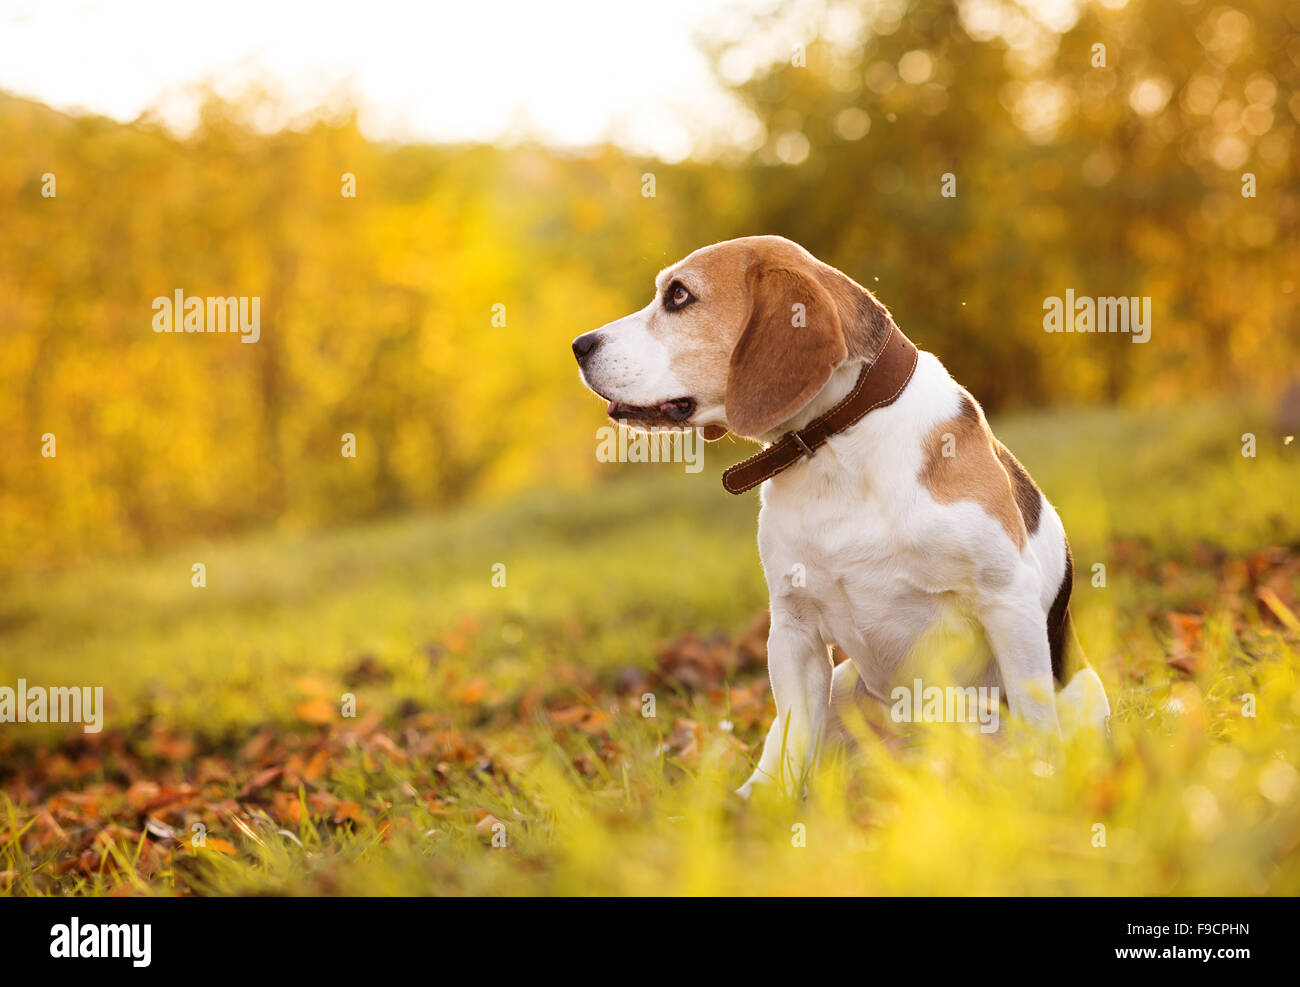 Beagle dog portrait on sunshine background in nature Stock Photo